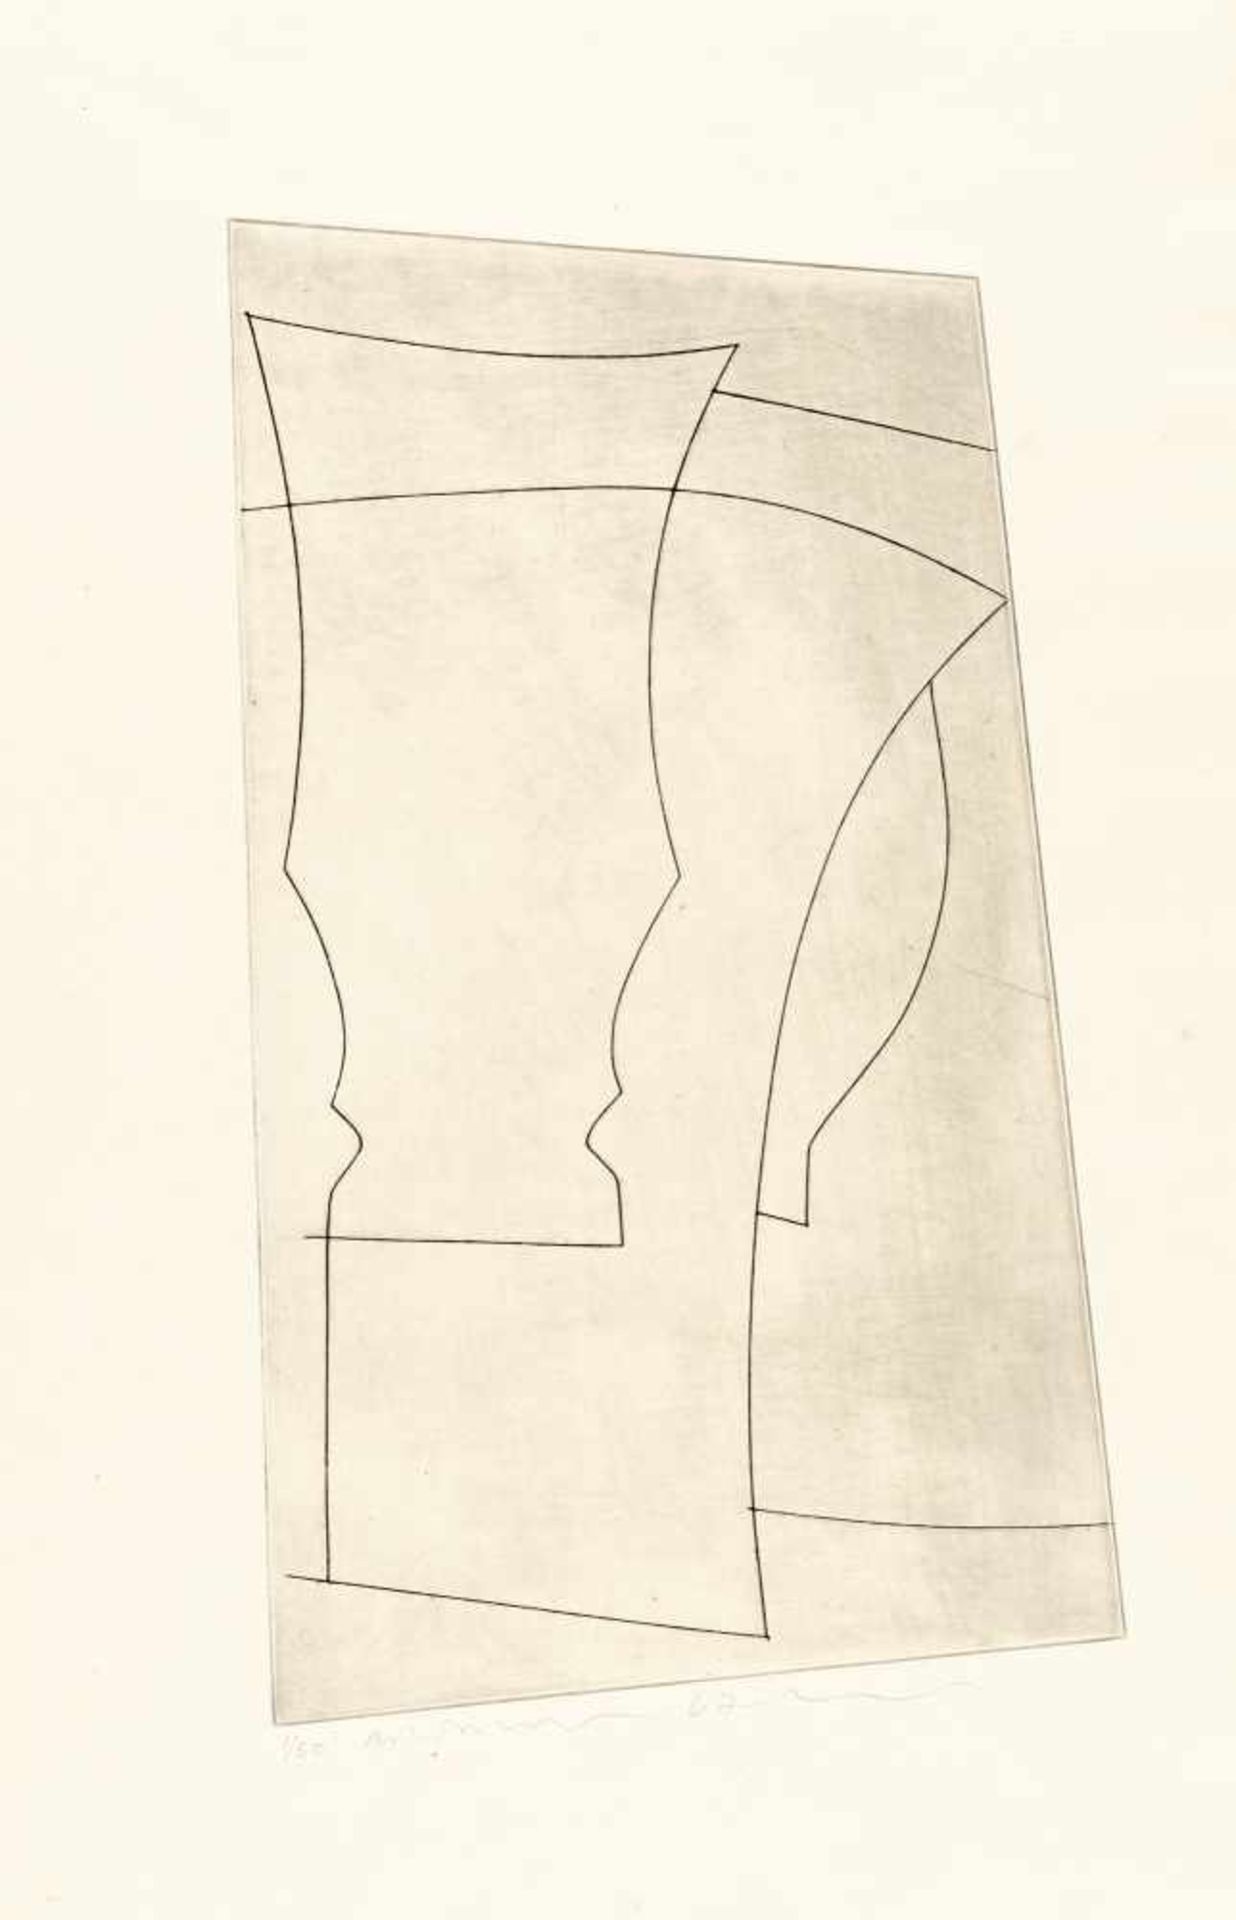 Ben NicholsonJug and GobletRadierung auf Velin. (19)67. Ca. 38 x 21 cm (Blattgröße ca. 49 x